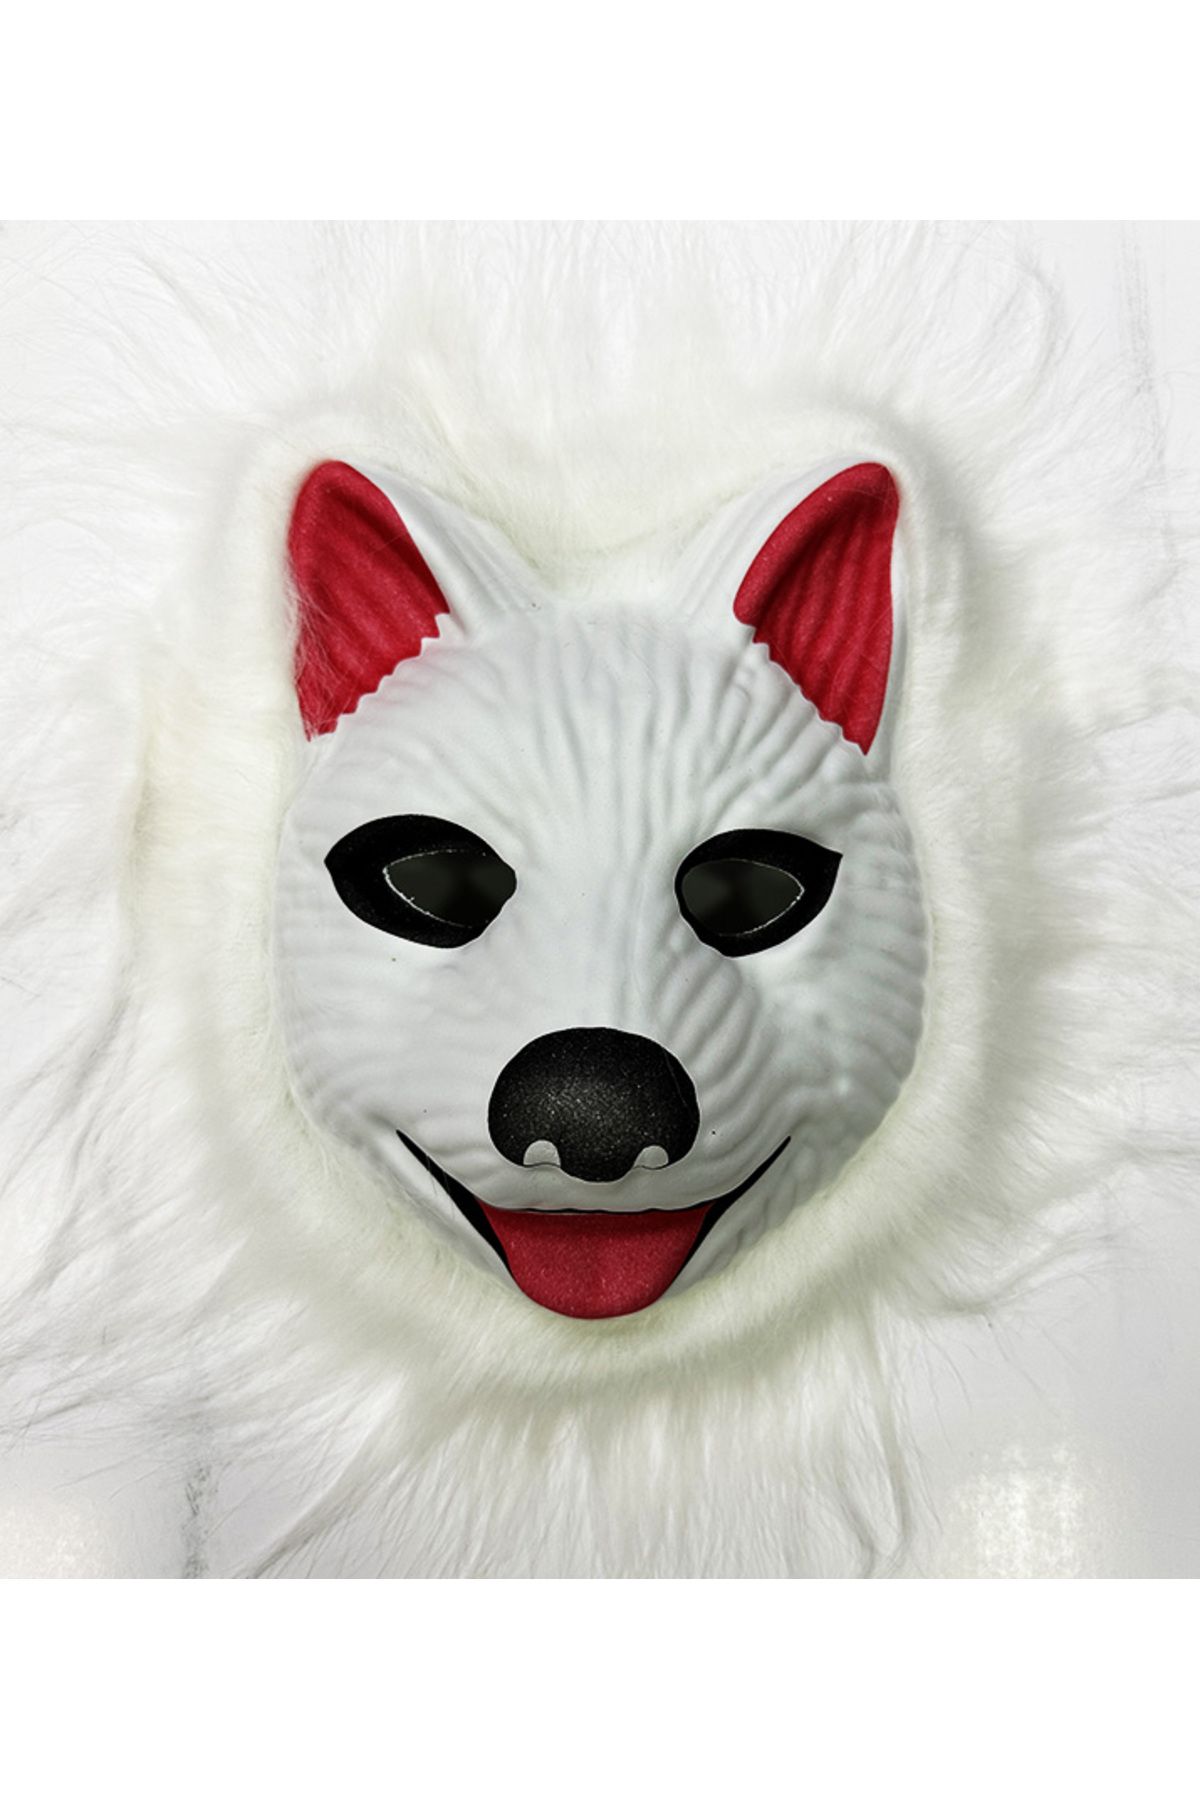 Skygo Köpek Maskesi - Kurt Maskesi Yetişkin Çocuk Uyumlu Beyaz Renk Model 2